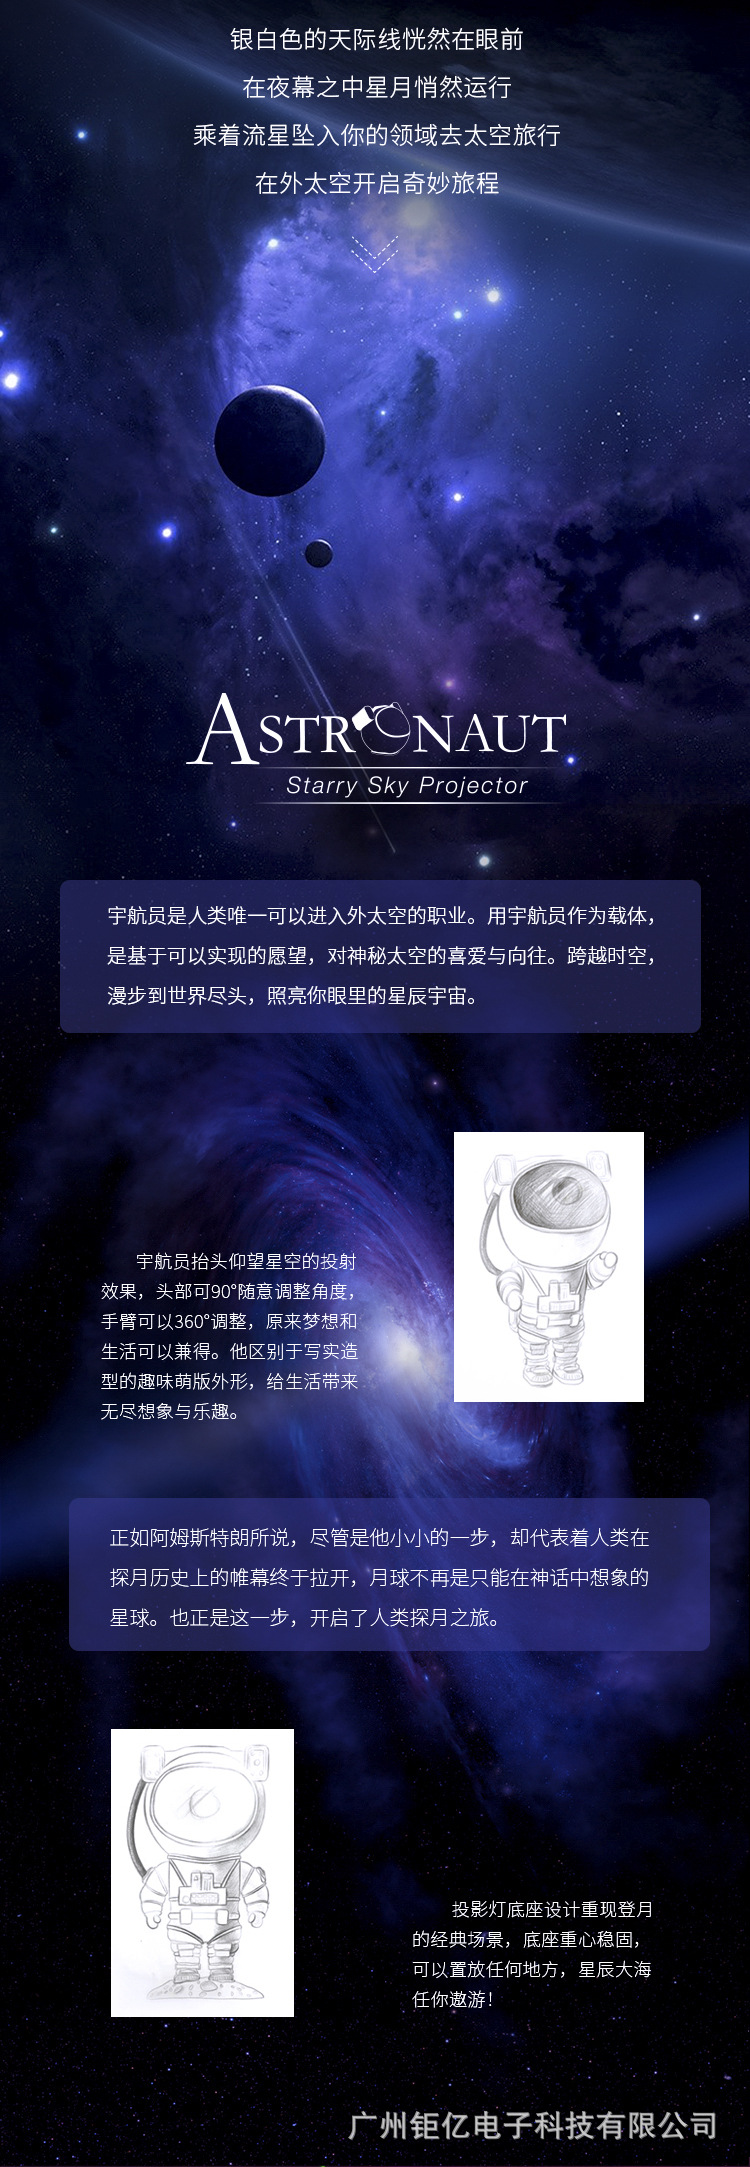 Astronaut Projection Lamp Details Page-Cut Figure-2.jpg